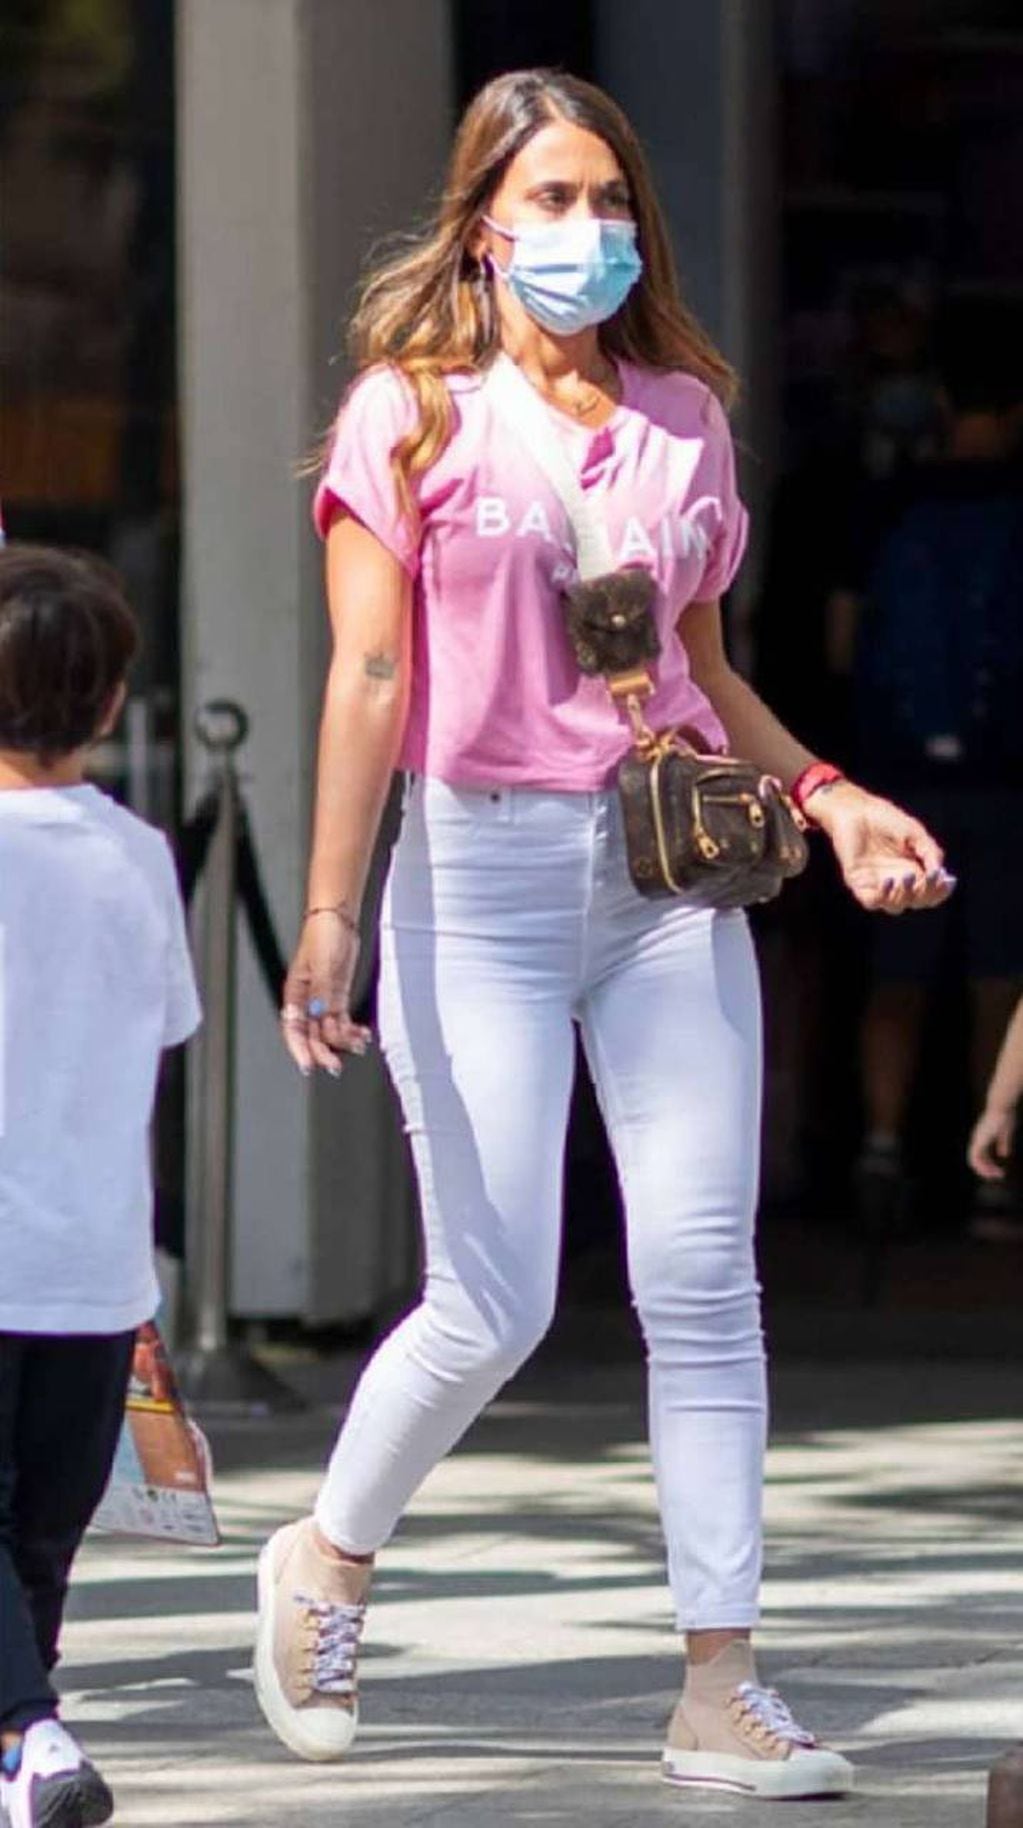 La influencer eligió un outfit deportivo en blanco y rosa.